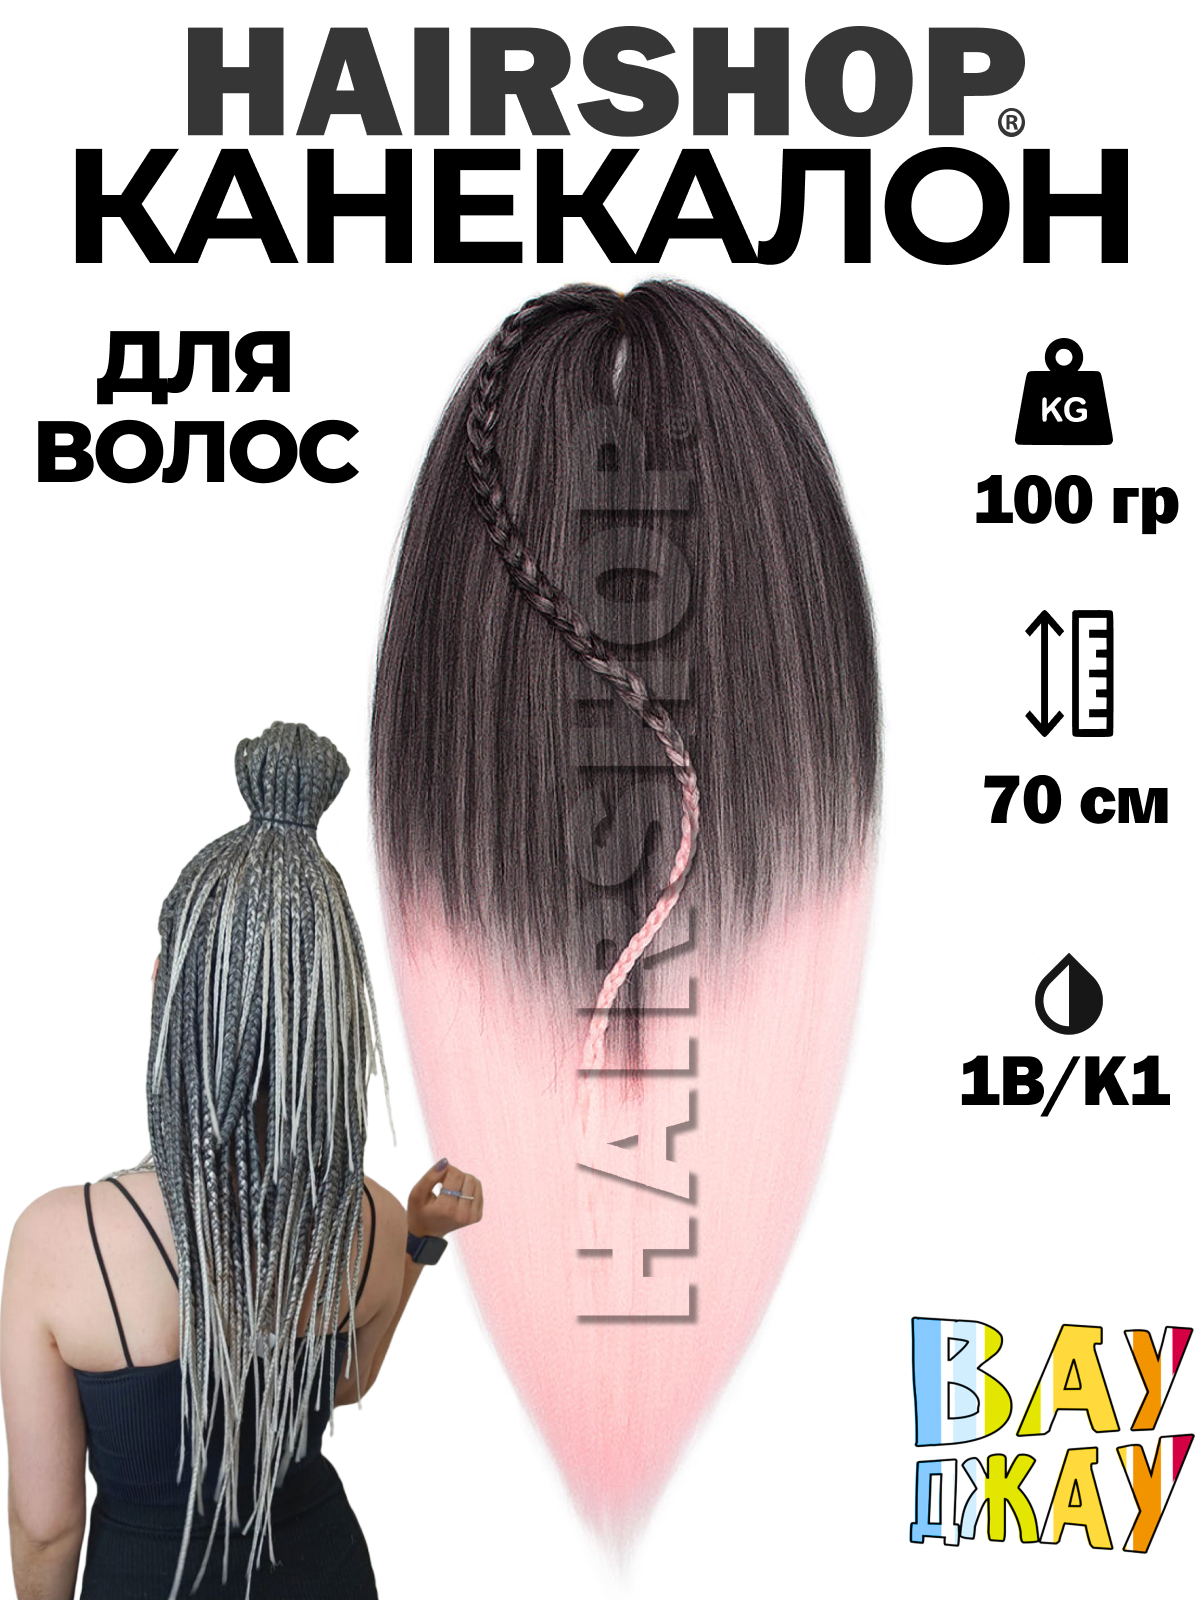 Канекалон Hairshop Вау Джау Черный Светло розовый 1,3м 100 г канекалон sim braids трёх ный 65 см синий чёрный светло розовый fr 33 7437807